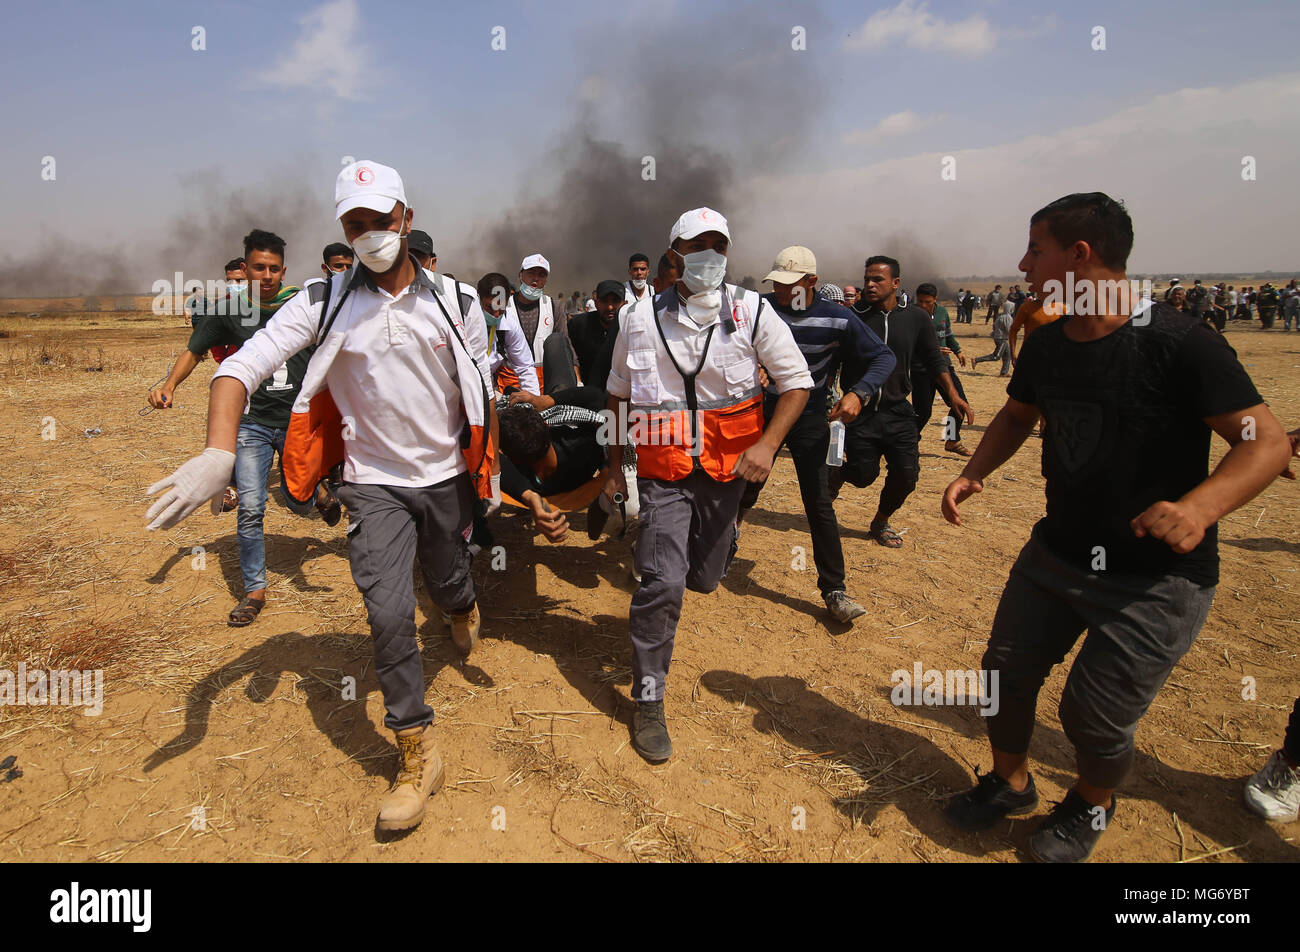 La bande de Gaza. Apr 27, 2018. Les médecins palestiniens transportent un homme blessé lors d'affrontements avec les troupes israéliennes sur la frontière Gaza-Israel, à l'est de Khan Younis, dans le sud de la ville de Gaza, le 27 avril 2018. Credit : Khaled Omar/Xinhua/Alamy Live News Banque D'Images